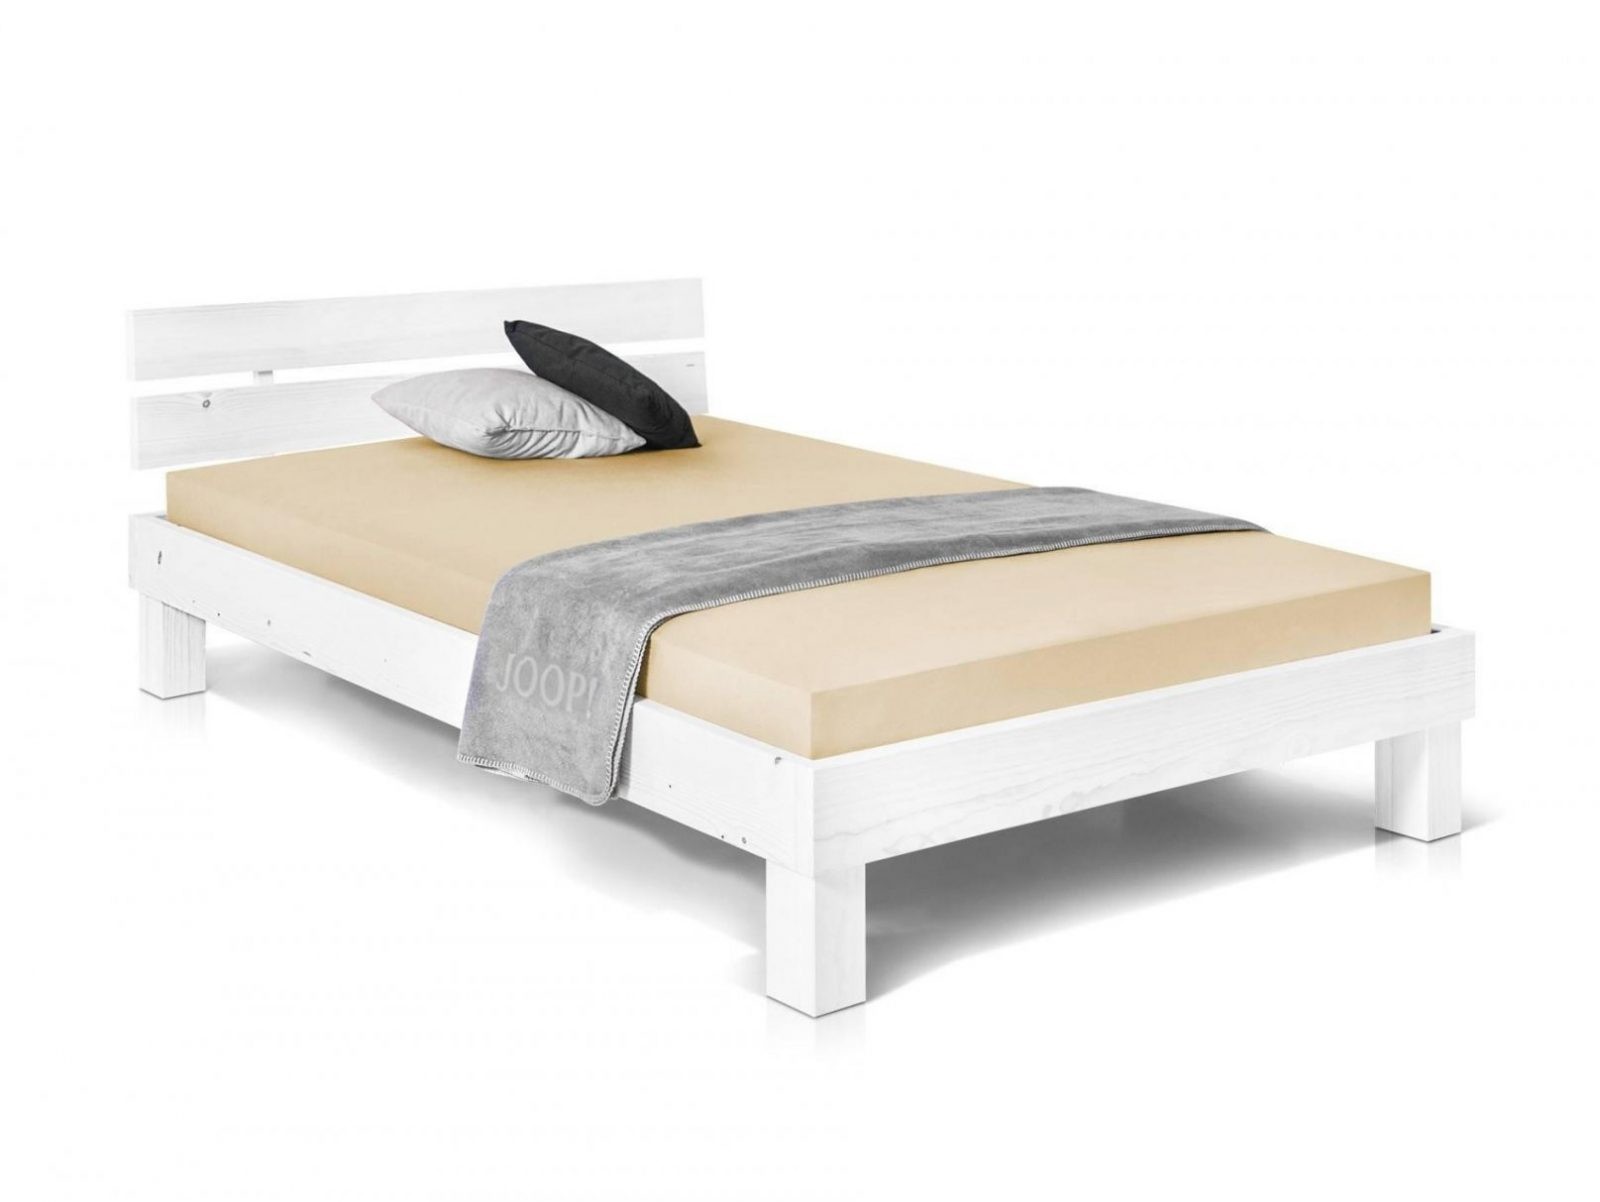 53 Luxus Betten 120×200 Dänisches Bettenlager  Huambodigital von Betten 120X200 Dänisches Bettenlager Bild